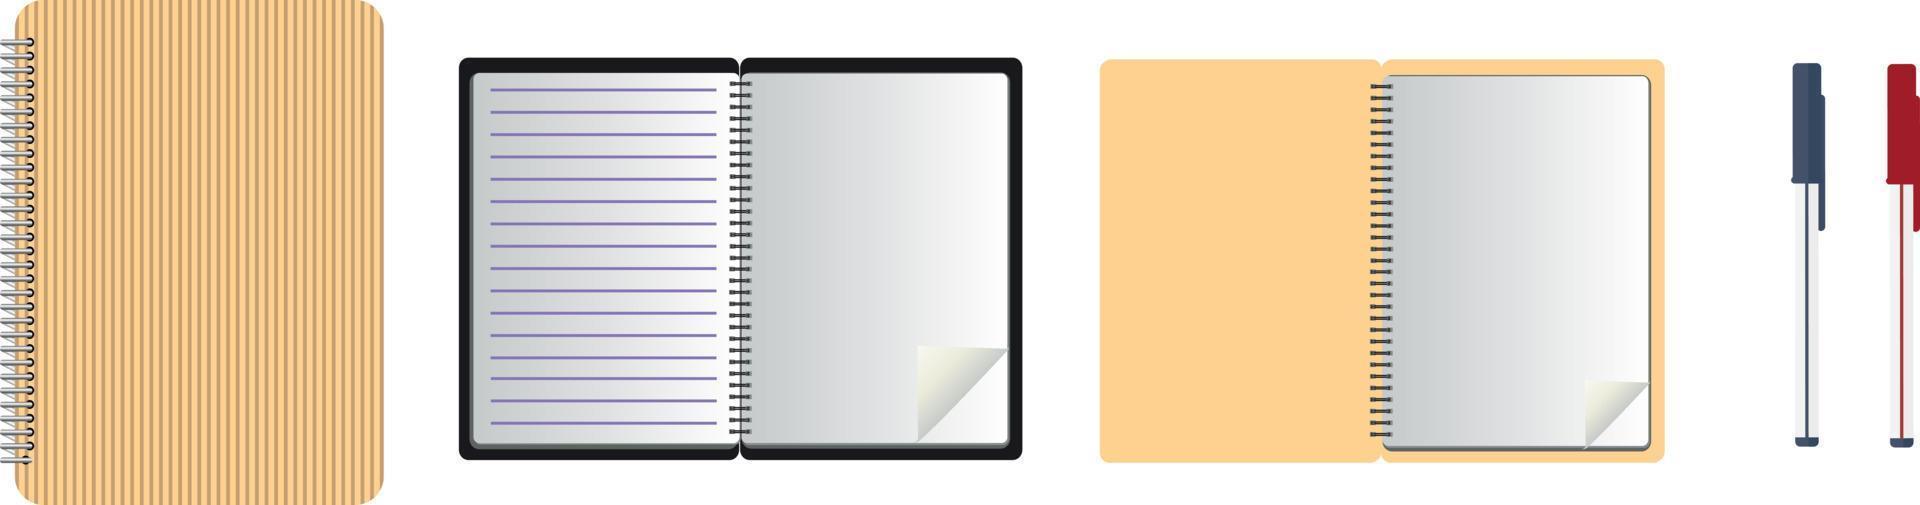 caderno de bloco de notas espiral realista em branco e caneta branca isolada no vetor branco. exibir maquete para objetos de promoção e identidade corporativa.